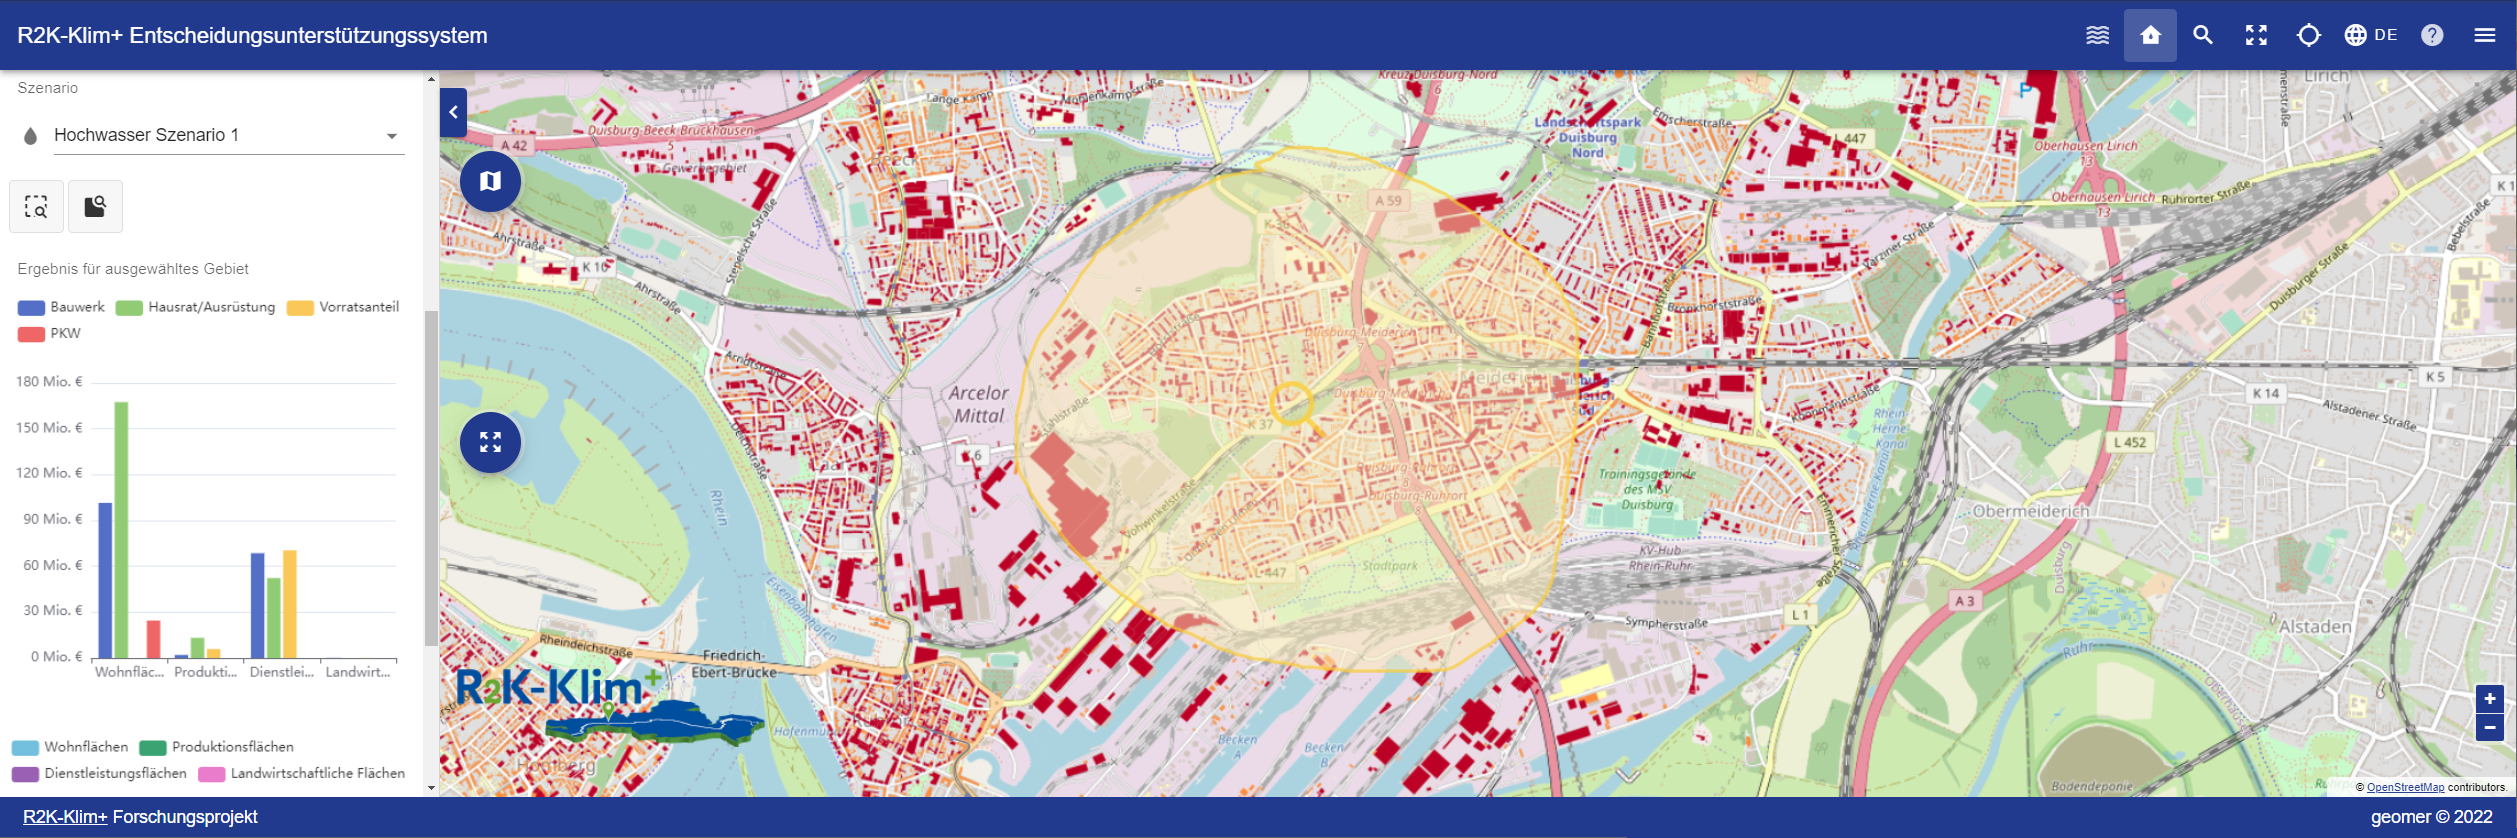 Die Abbildung zeigt einen Screenshot des Prototyps des Entscheidungsunterstützungssystems. Darauf ist ein Ausschnitt des Stadtgebietes von Duisburg farblich hervorgehoben und für diesen Ausschnitt werden die Hochwasserschäden für die verschiedenen Flächen